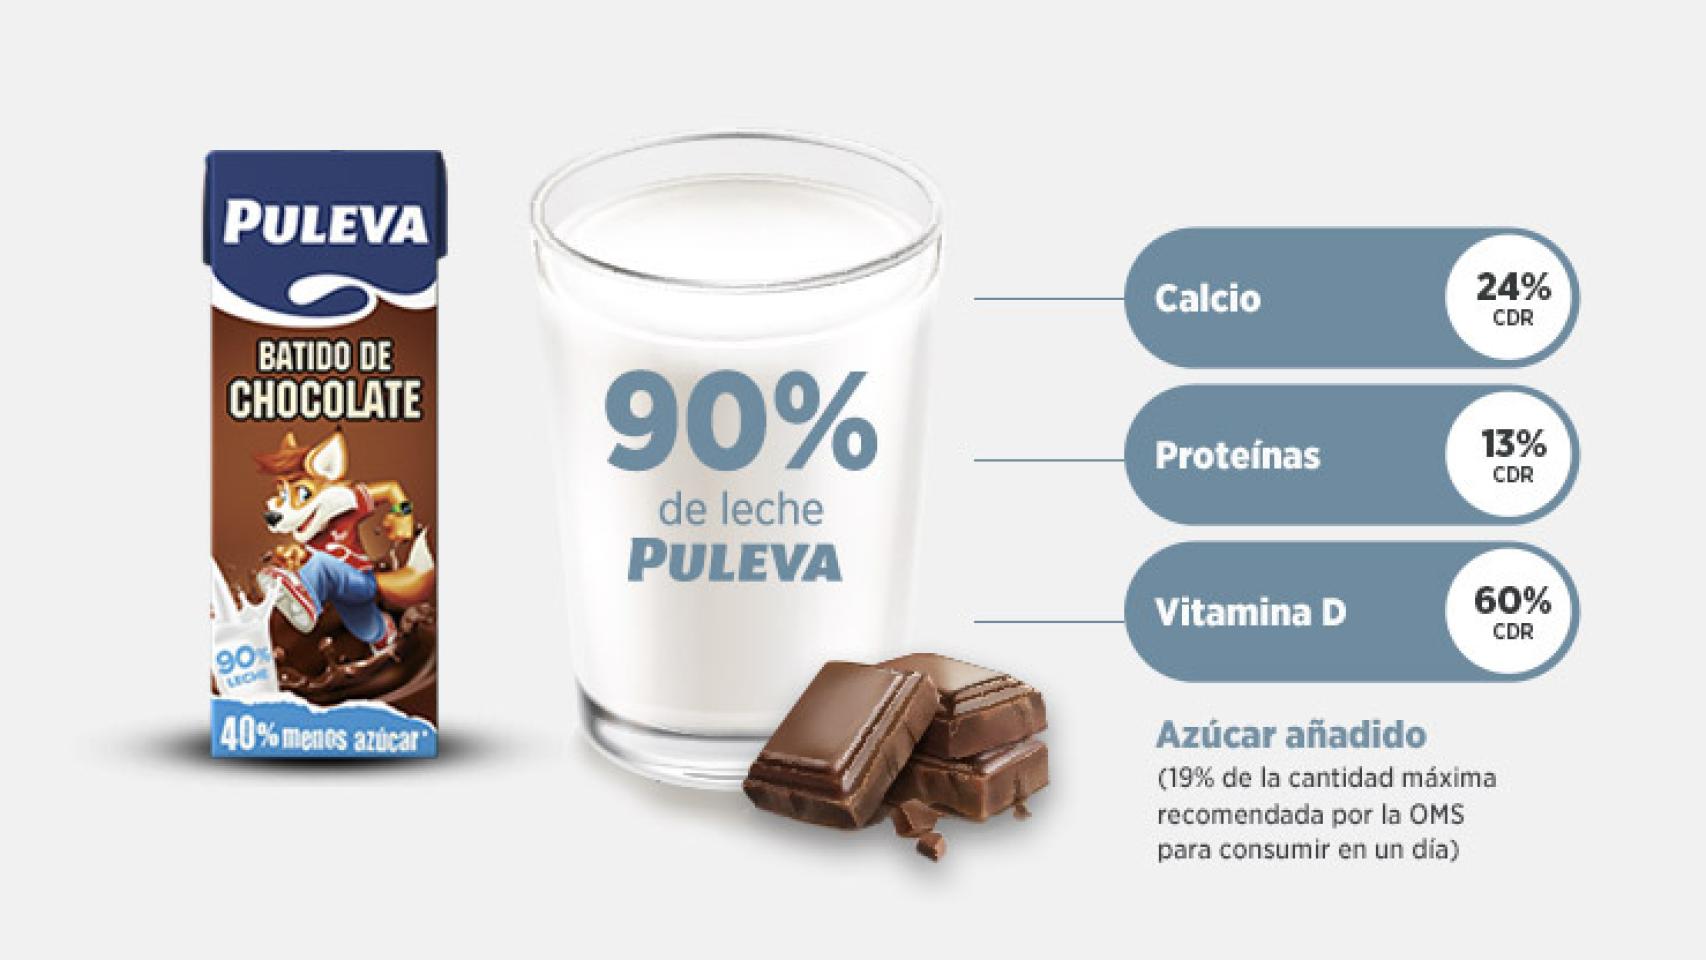 Calorías en Cola Cao Cola Cao 0% e Información Nutricional